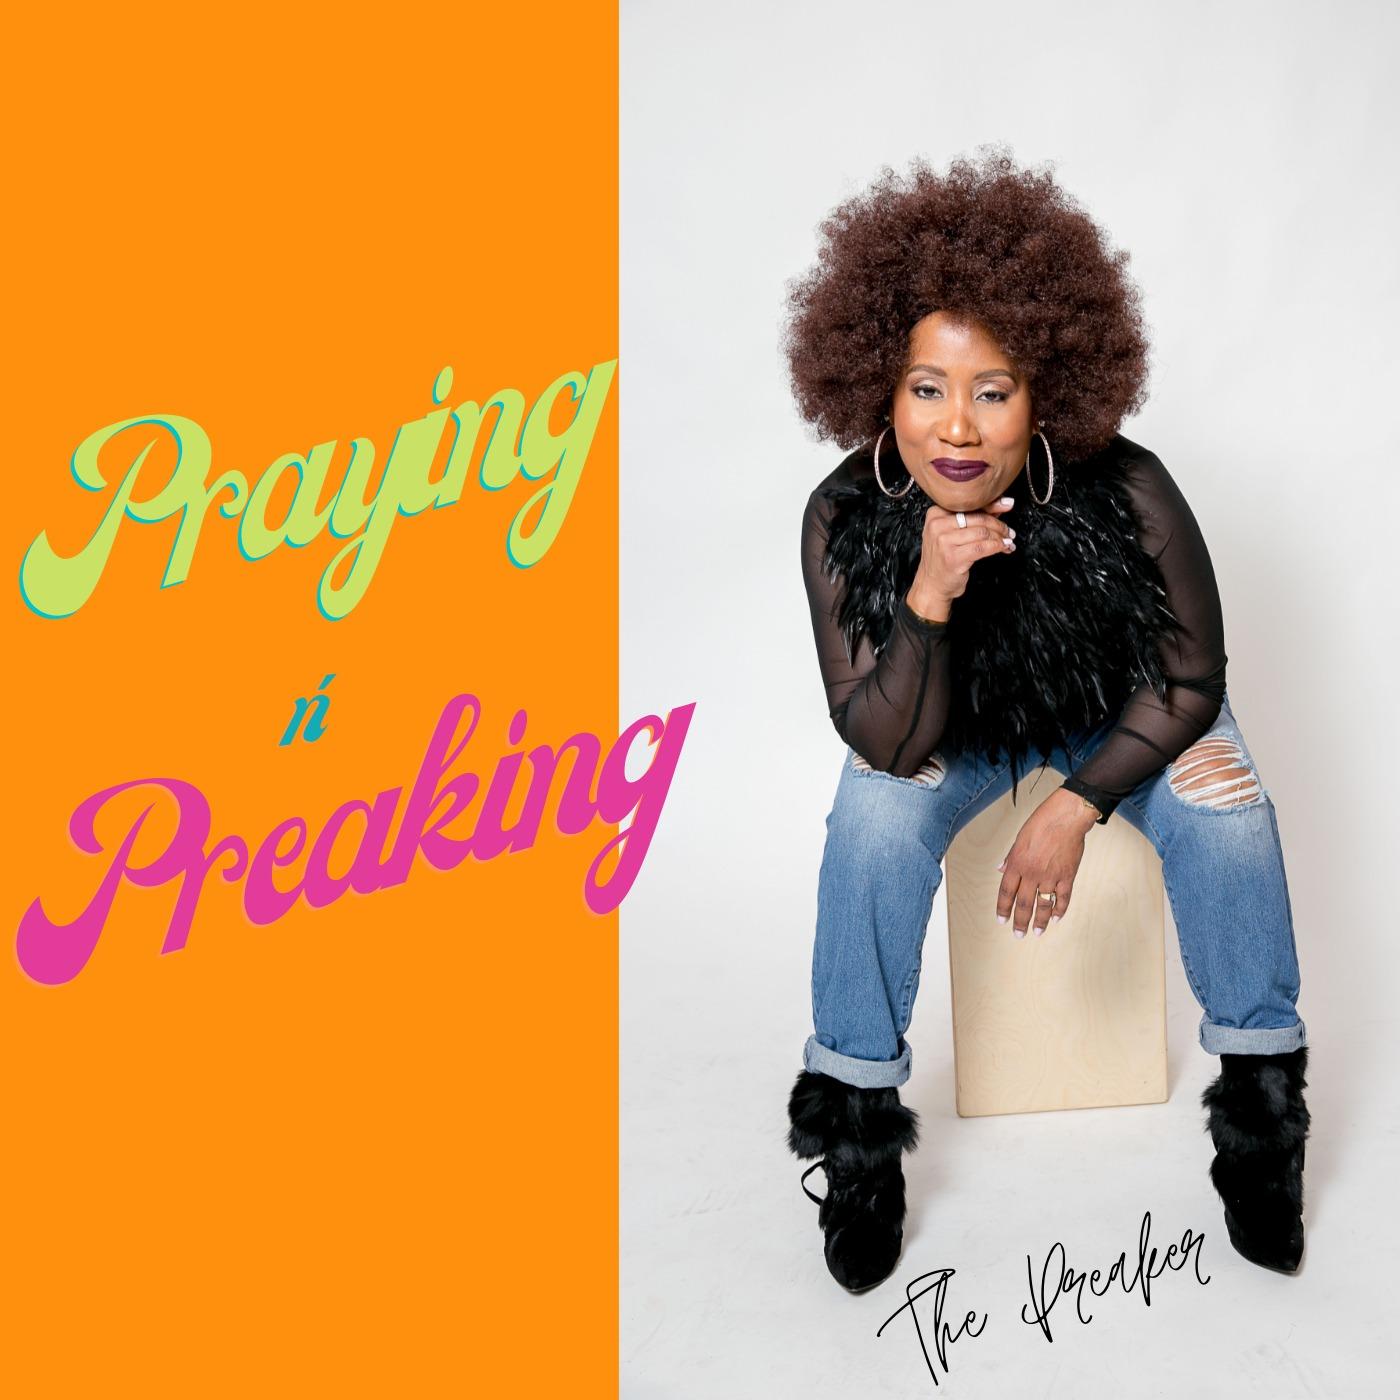 Praying n' Preaking